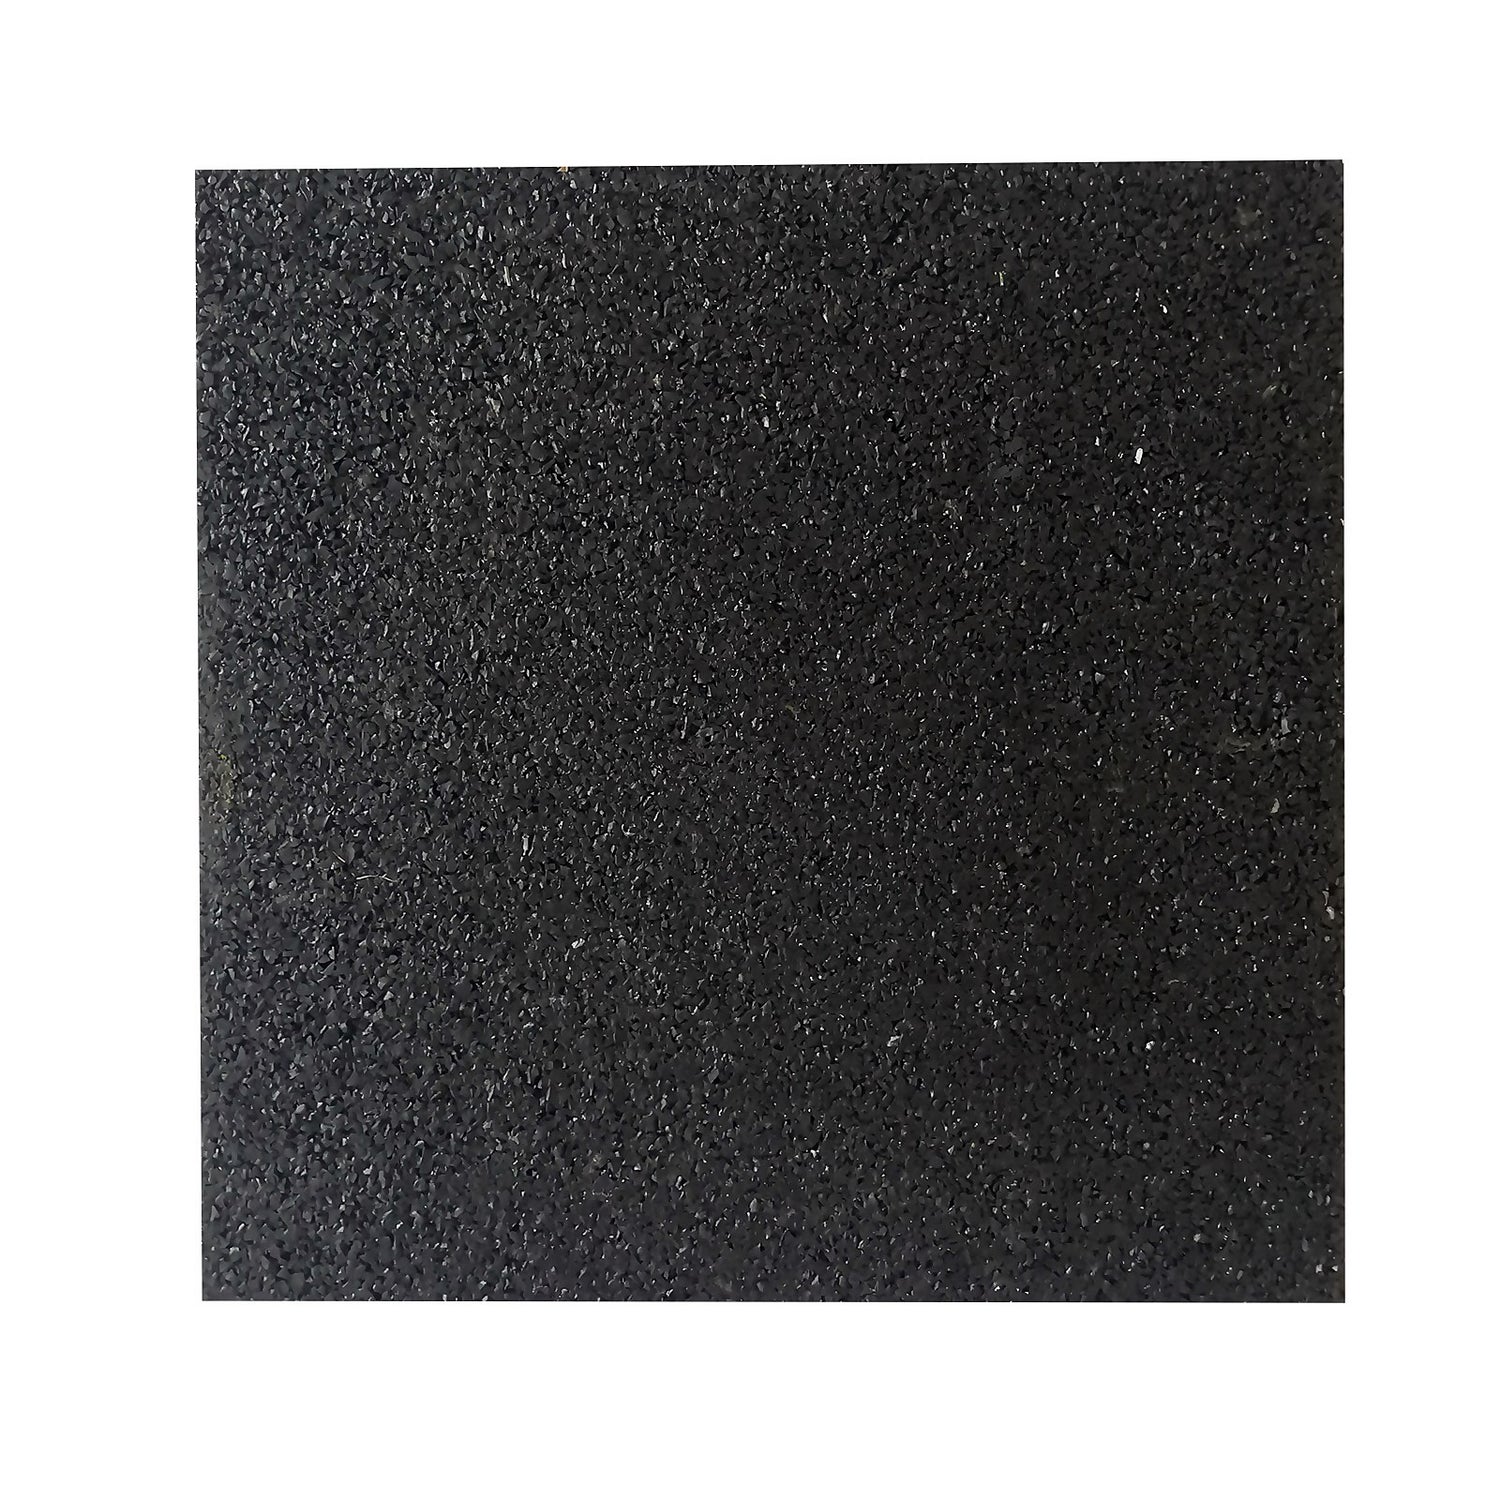 Rubber Tile Black 300mm